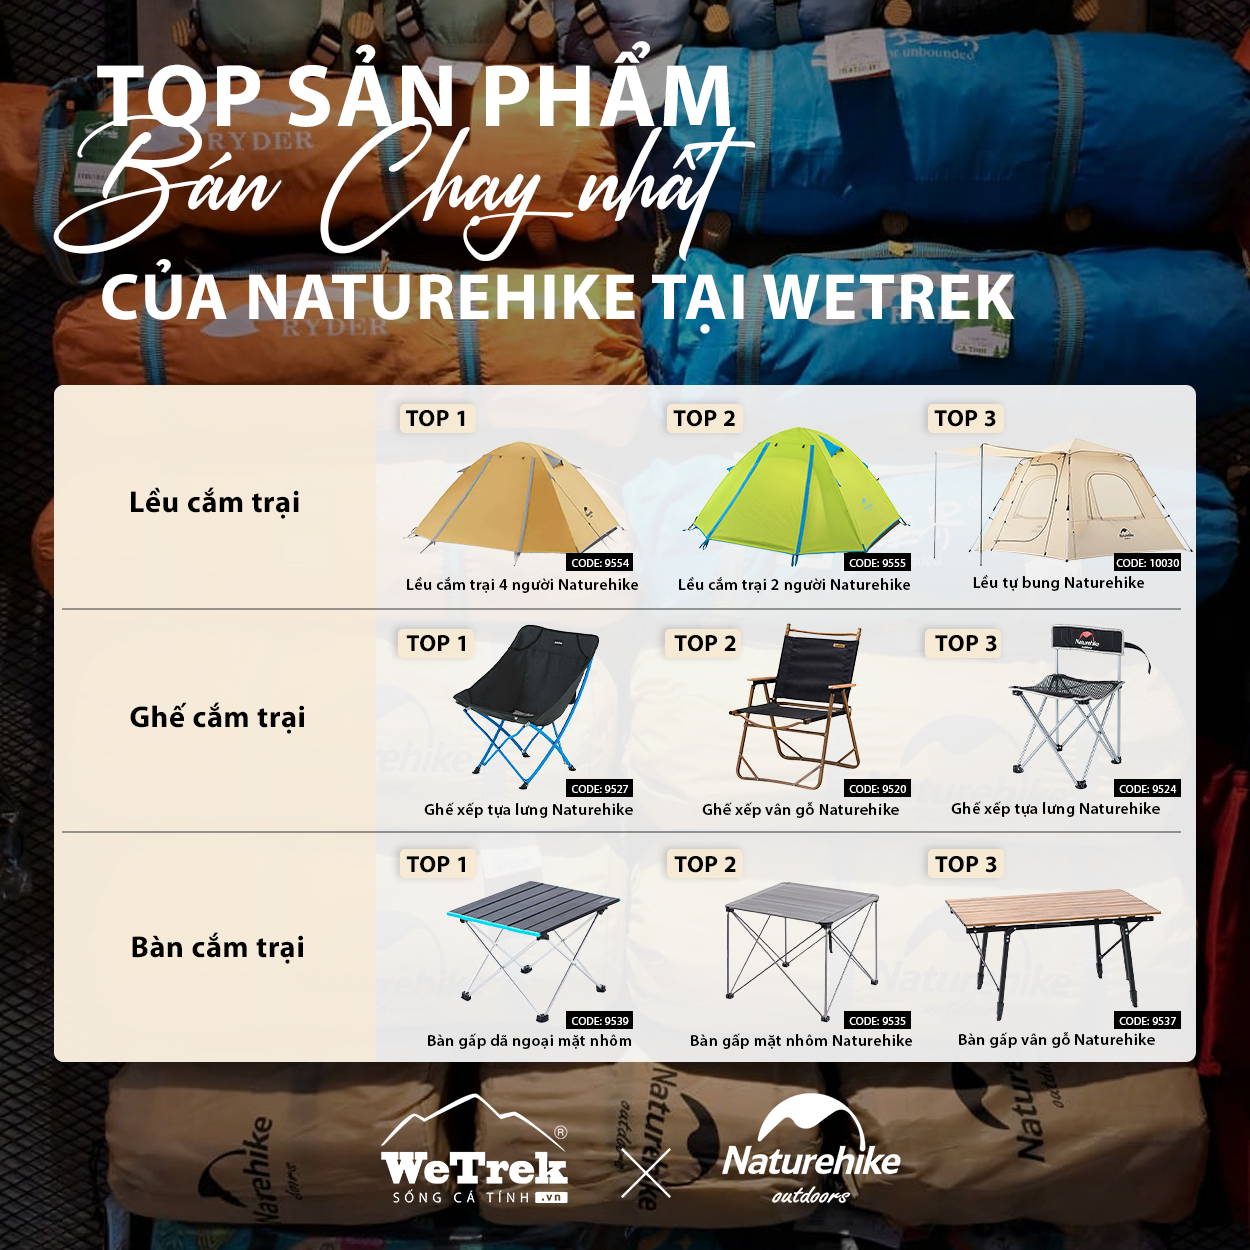 Top sản phẩm Naturehike bán chạy nhất tại WeTrek.vn